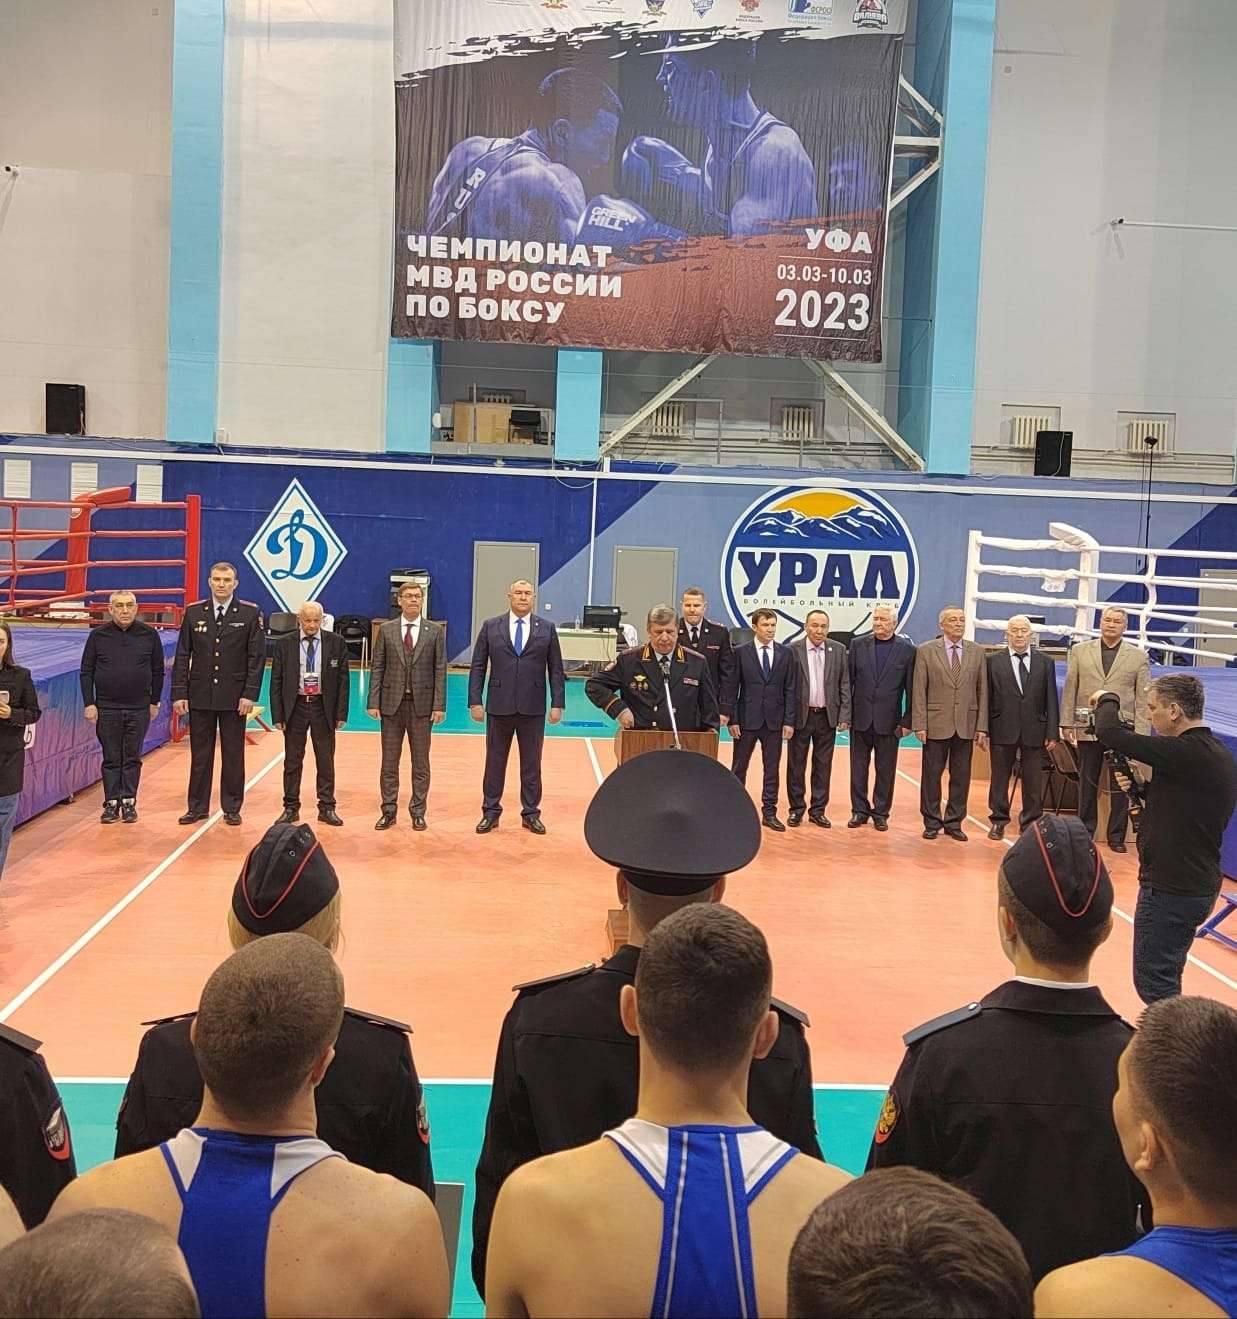 С 3 по 10 марта 2023 в ск Динамо проходит Чемпионат МВД России по боксу